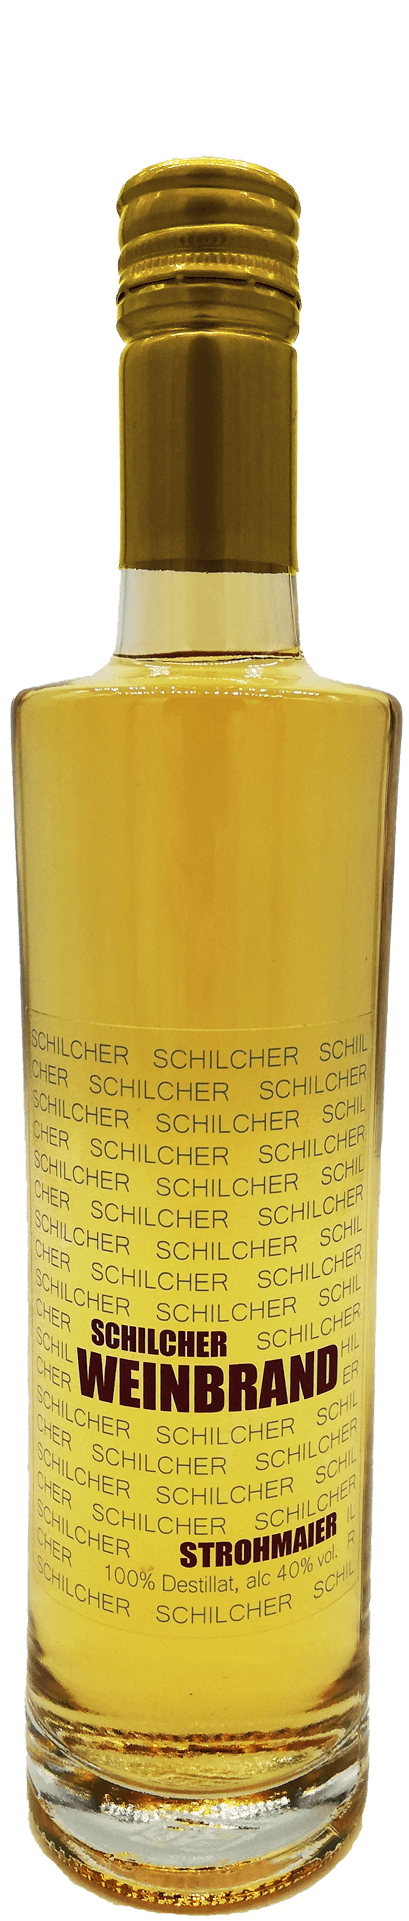 Schilcher Weinbrand